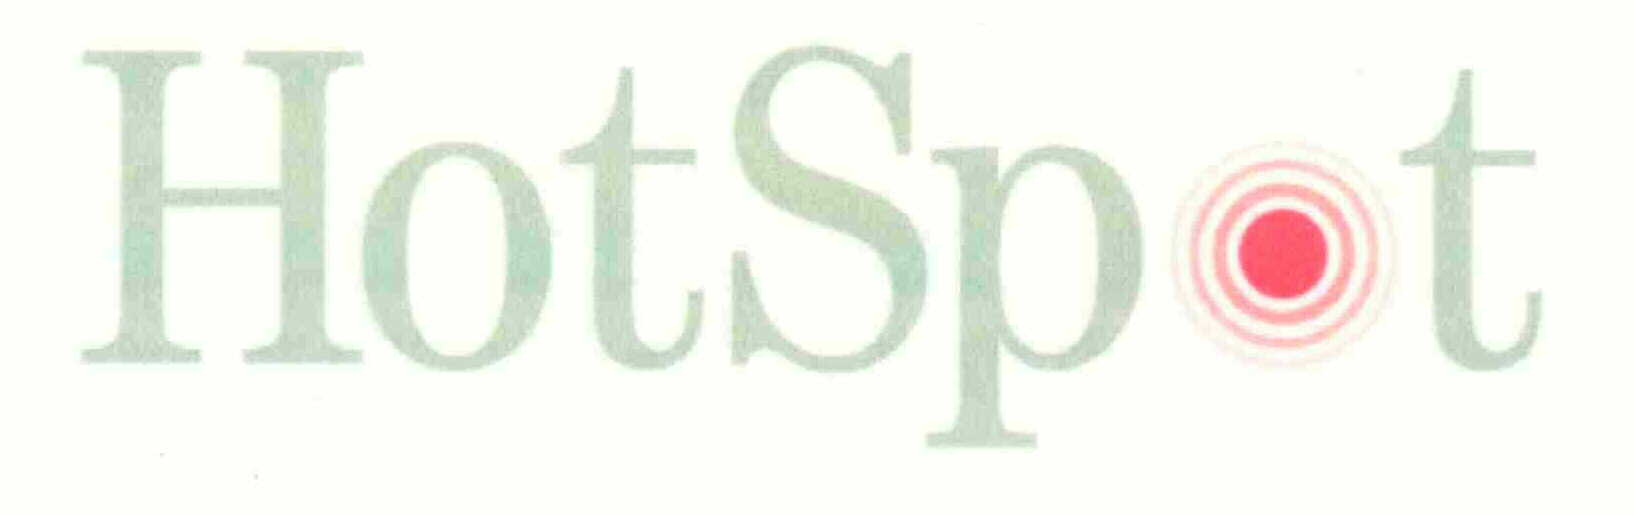 Trademark Logo HOTSPOT